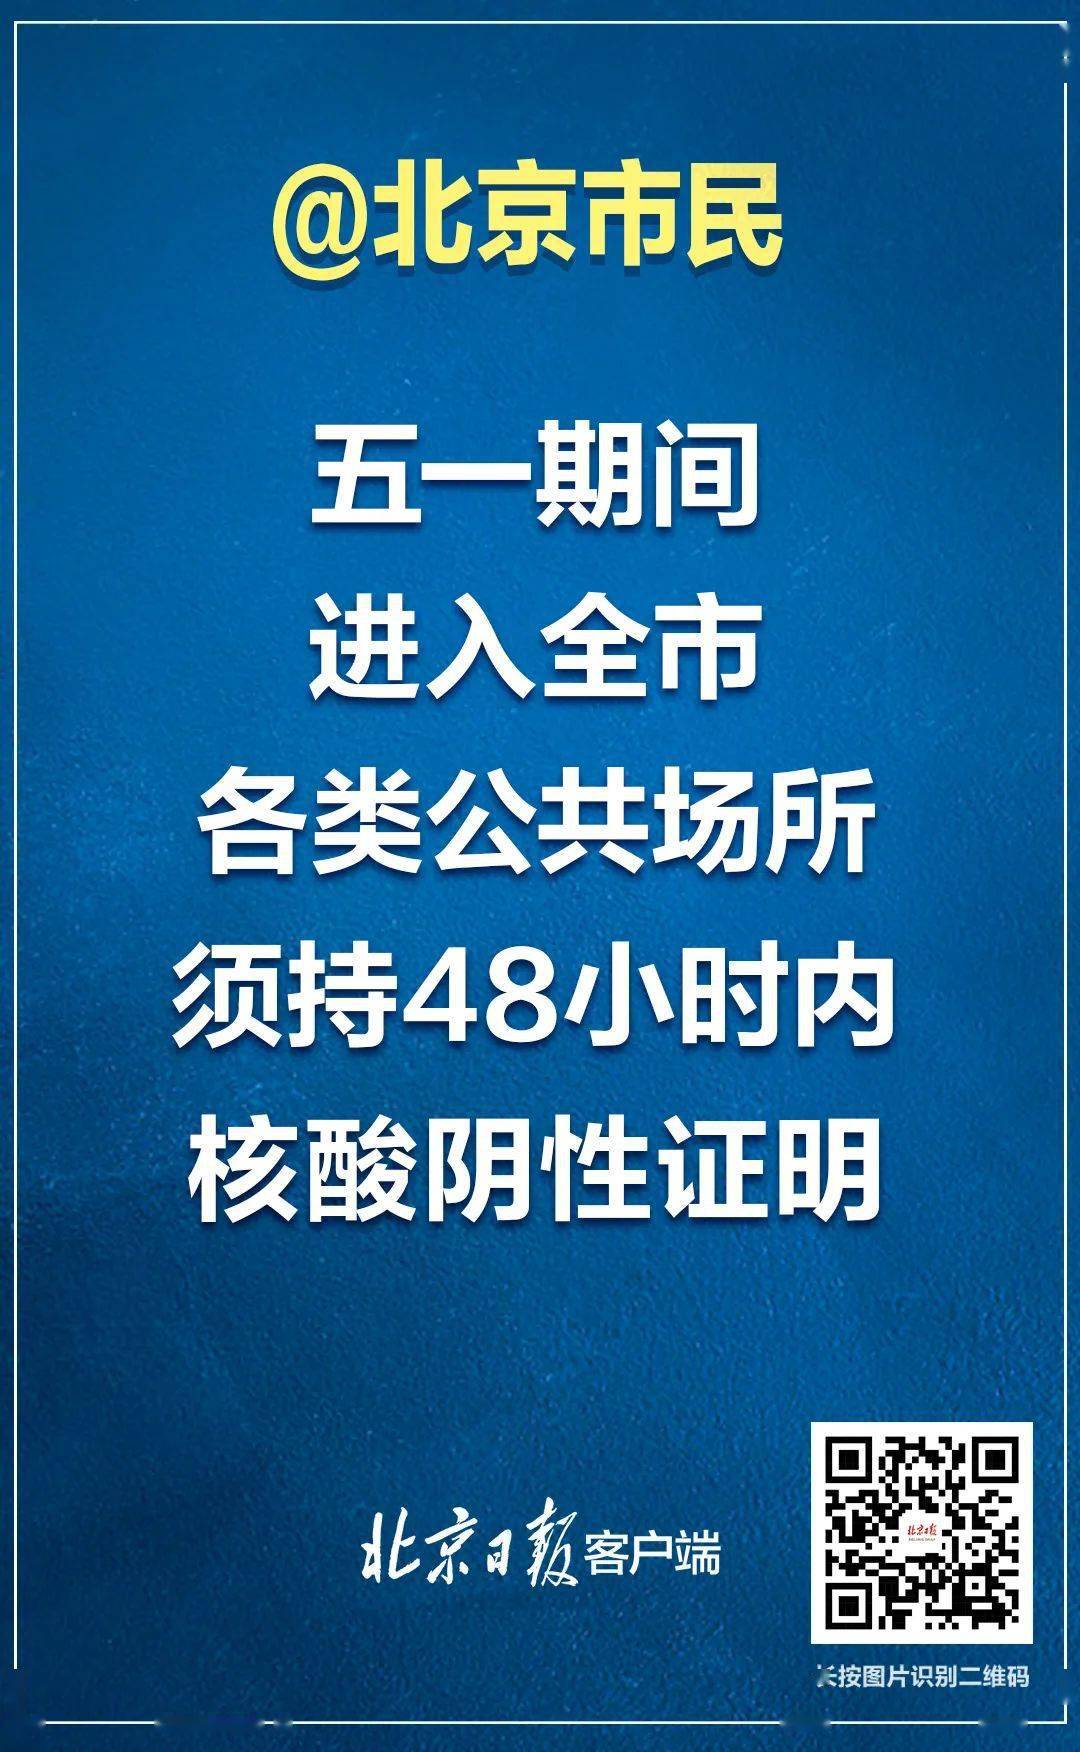 北京五一假期进入全市公共场所须持核酸检测阴性证明